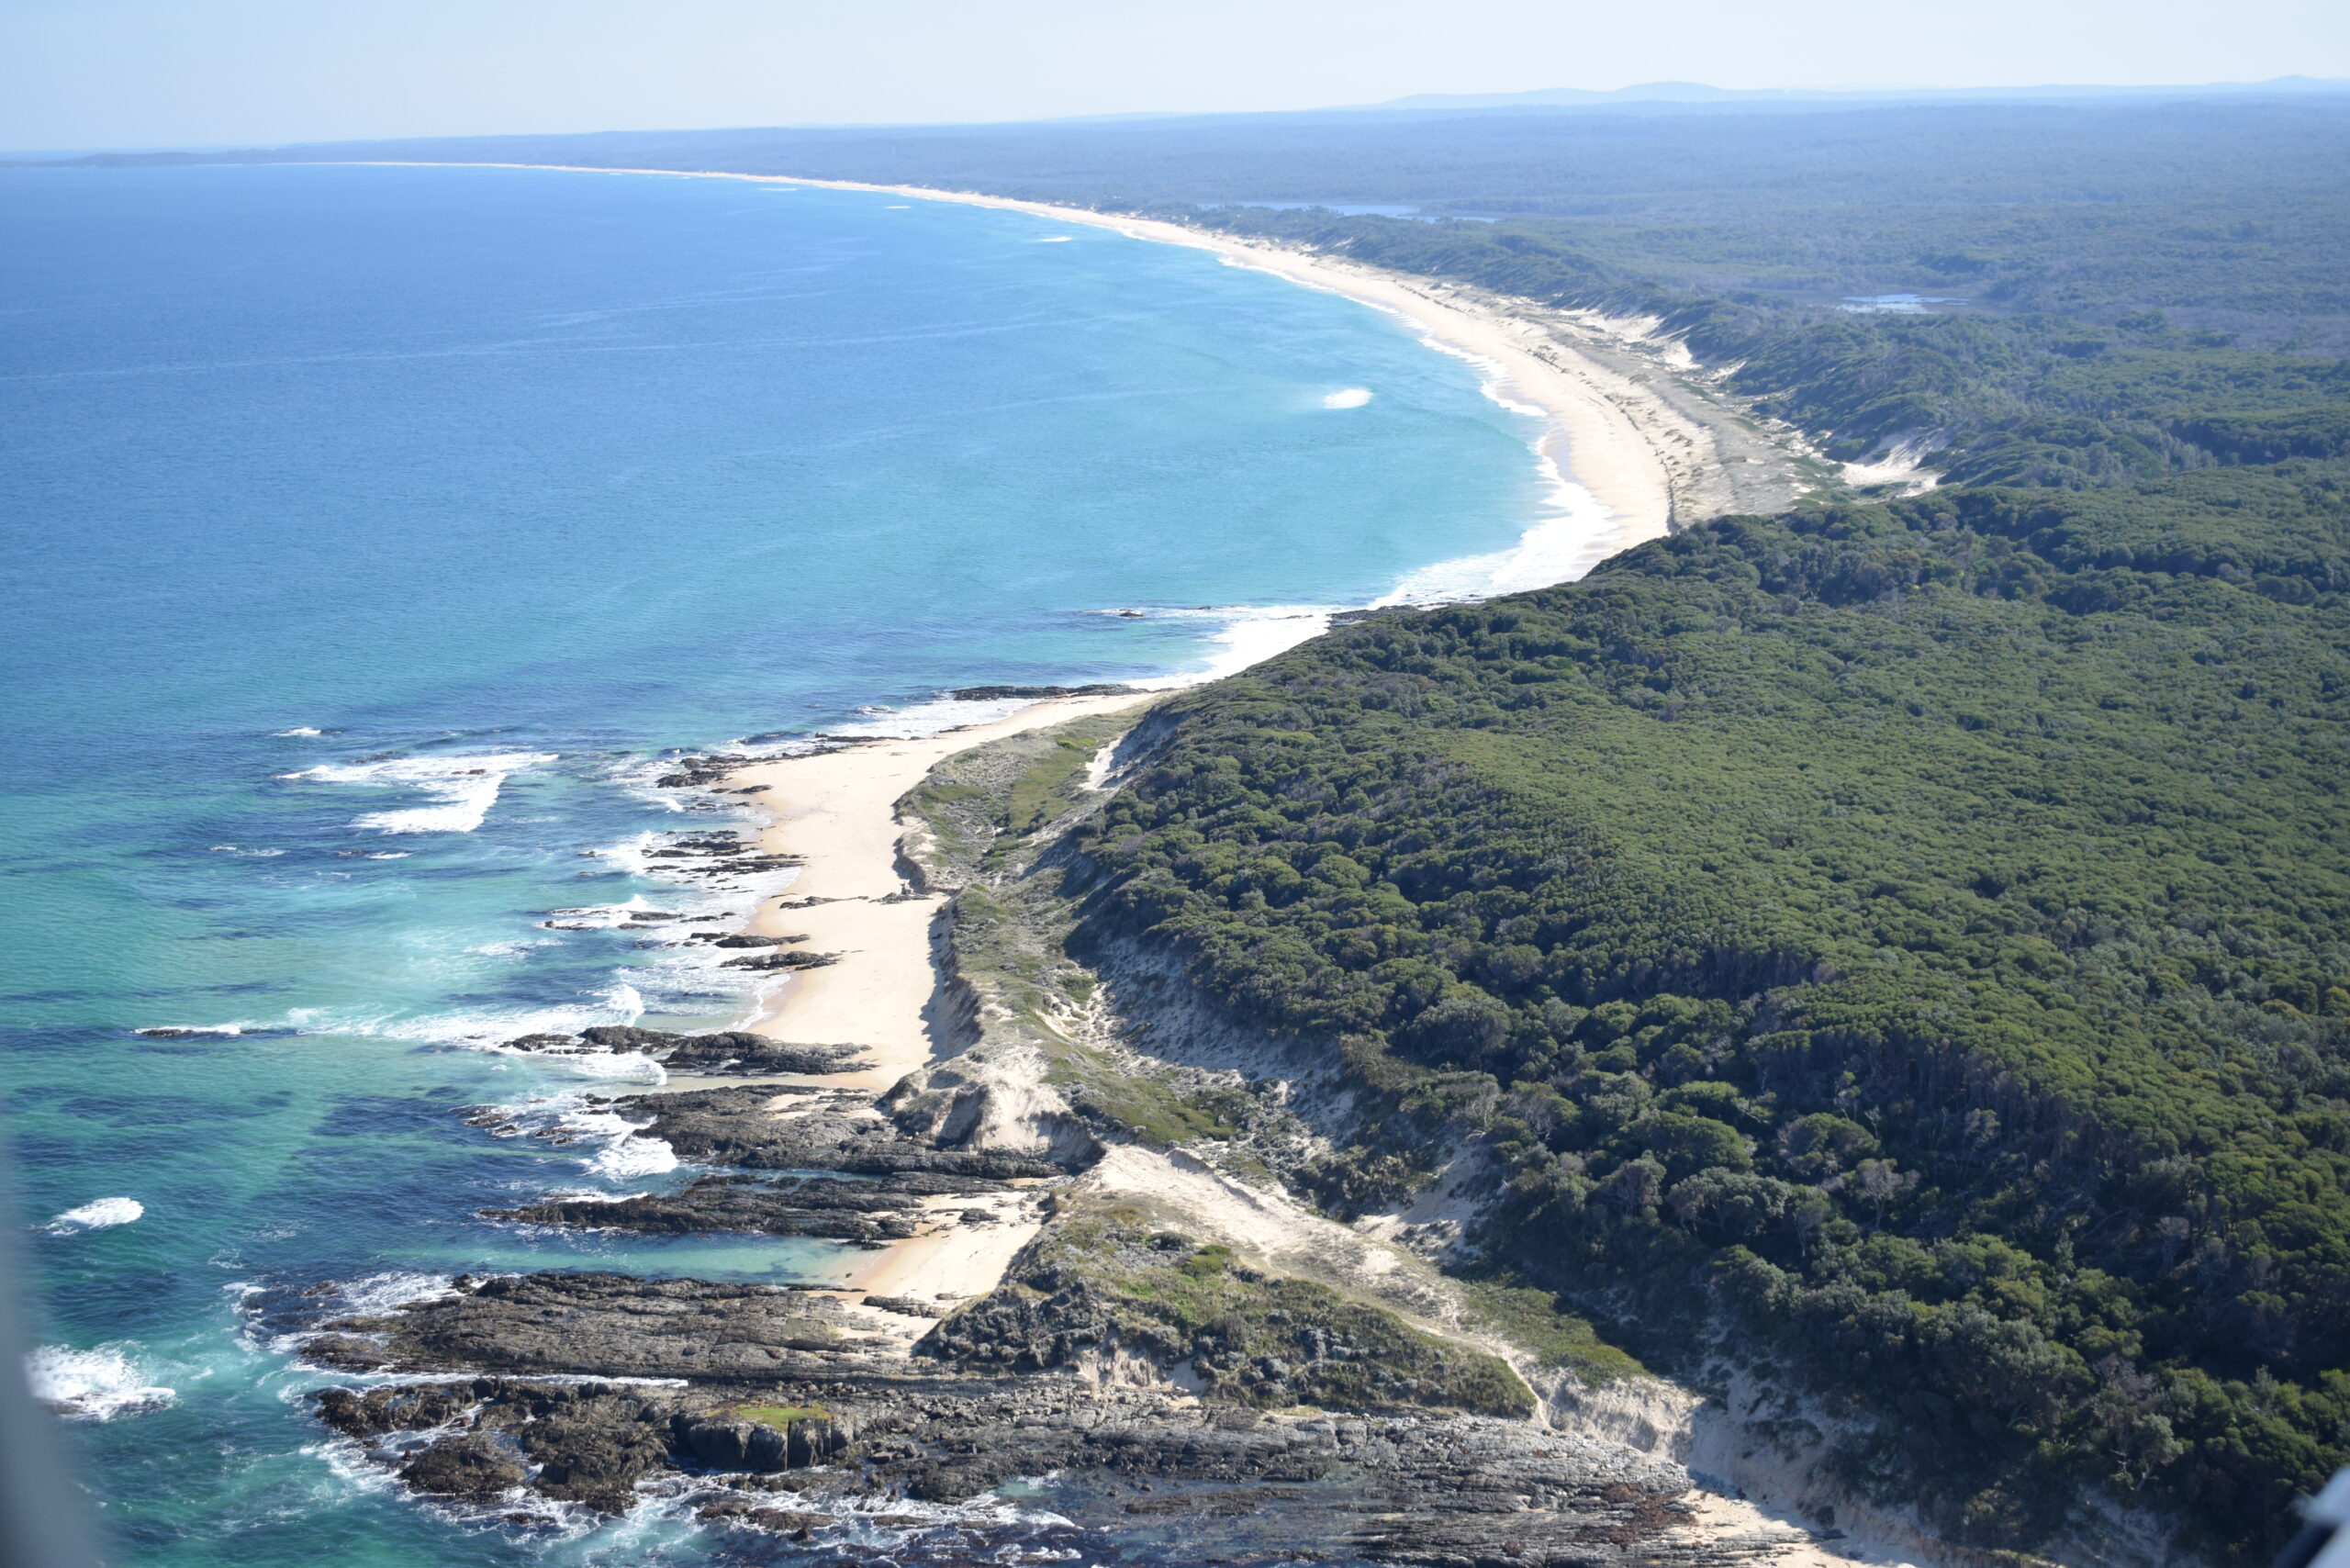 Article: Coastline cliff asset management